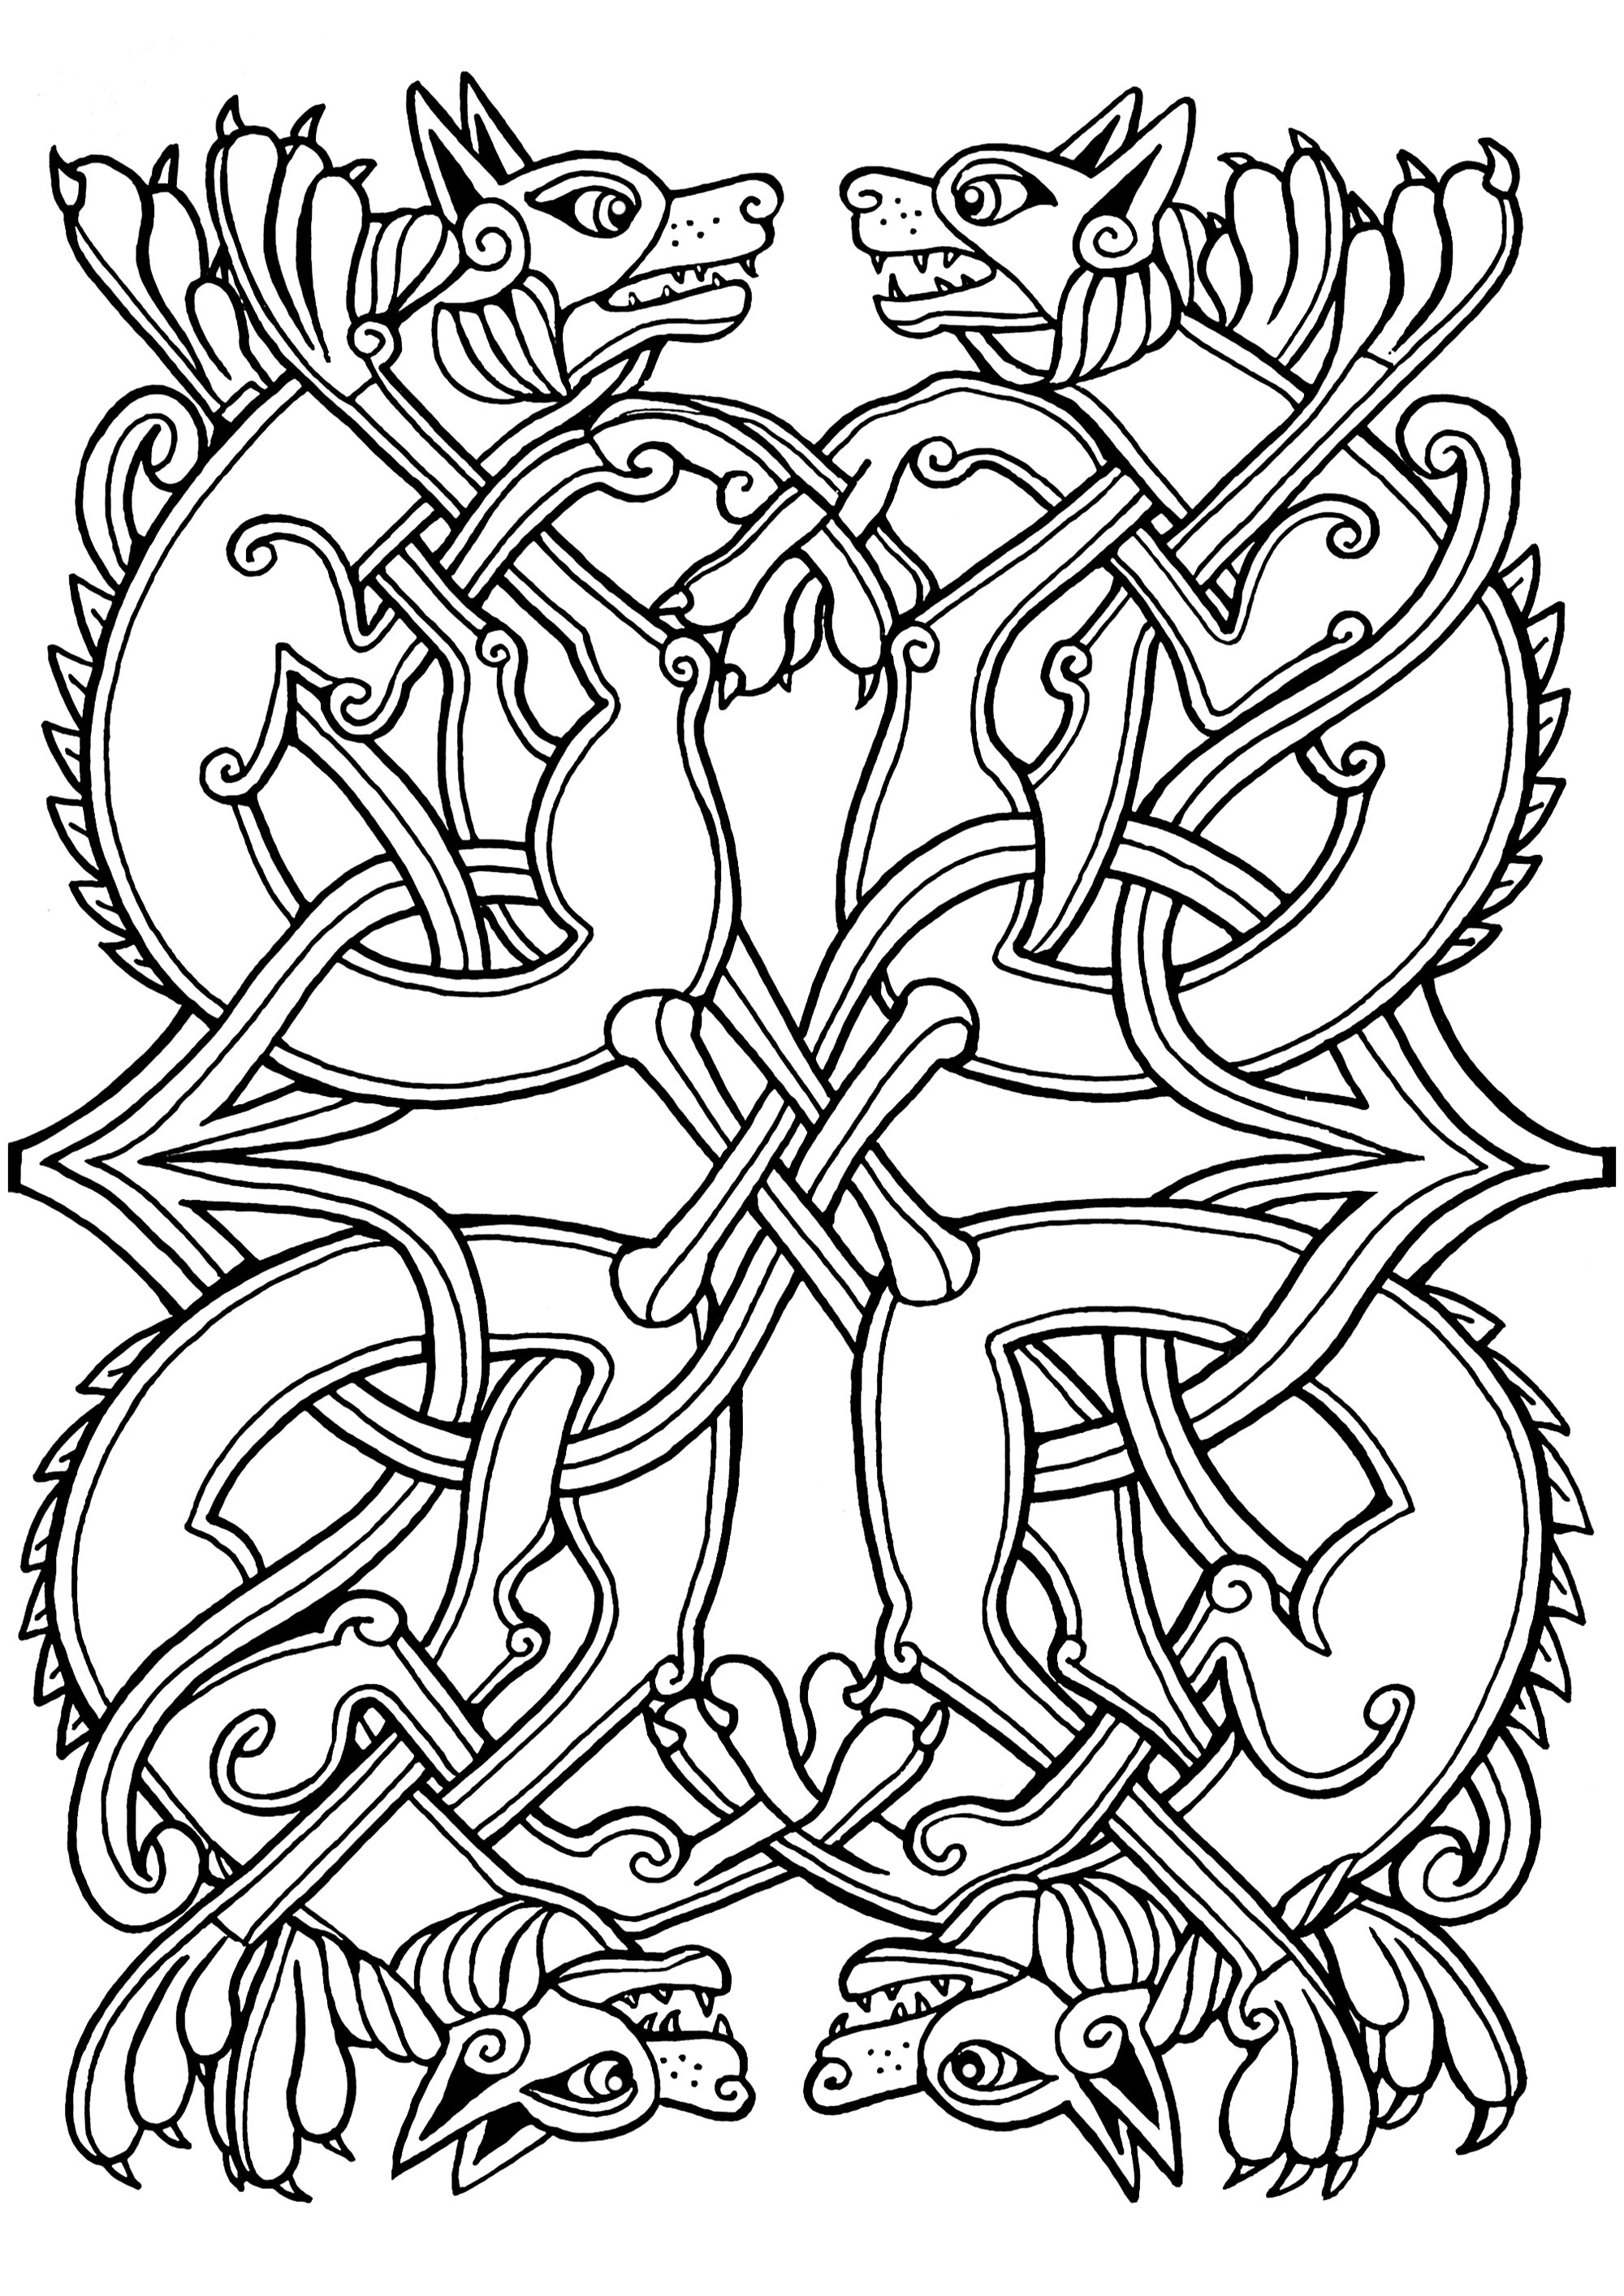 Desenho celta de cães com motivos celtas entrelaçados. Esta ilustração assemelha-se às encontradas em manuscritos medievais, como o Livro de Kells.